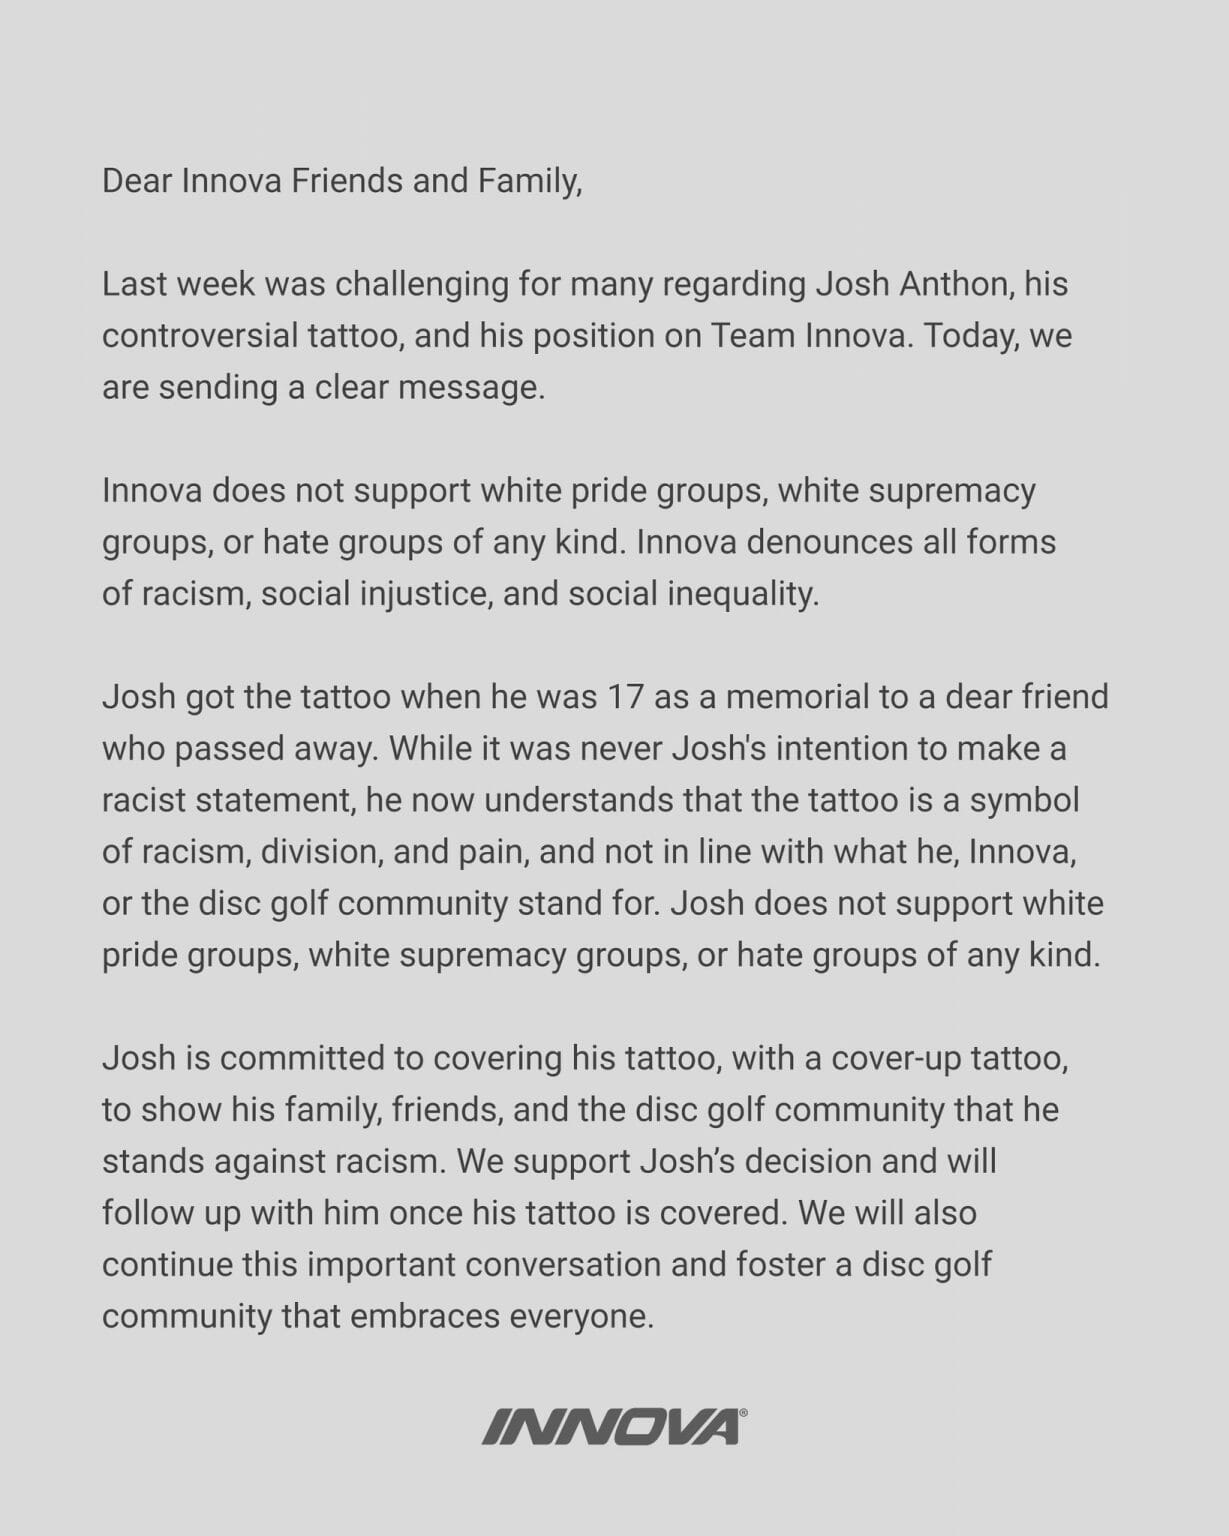 Statement regarding Josh Anthon : r/discgolf